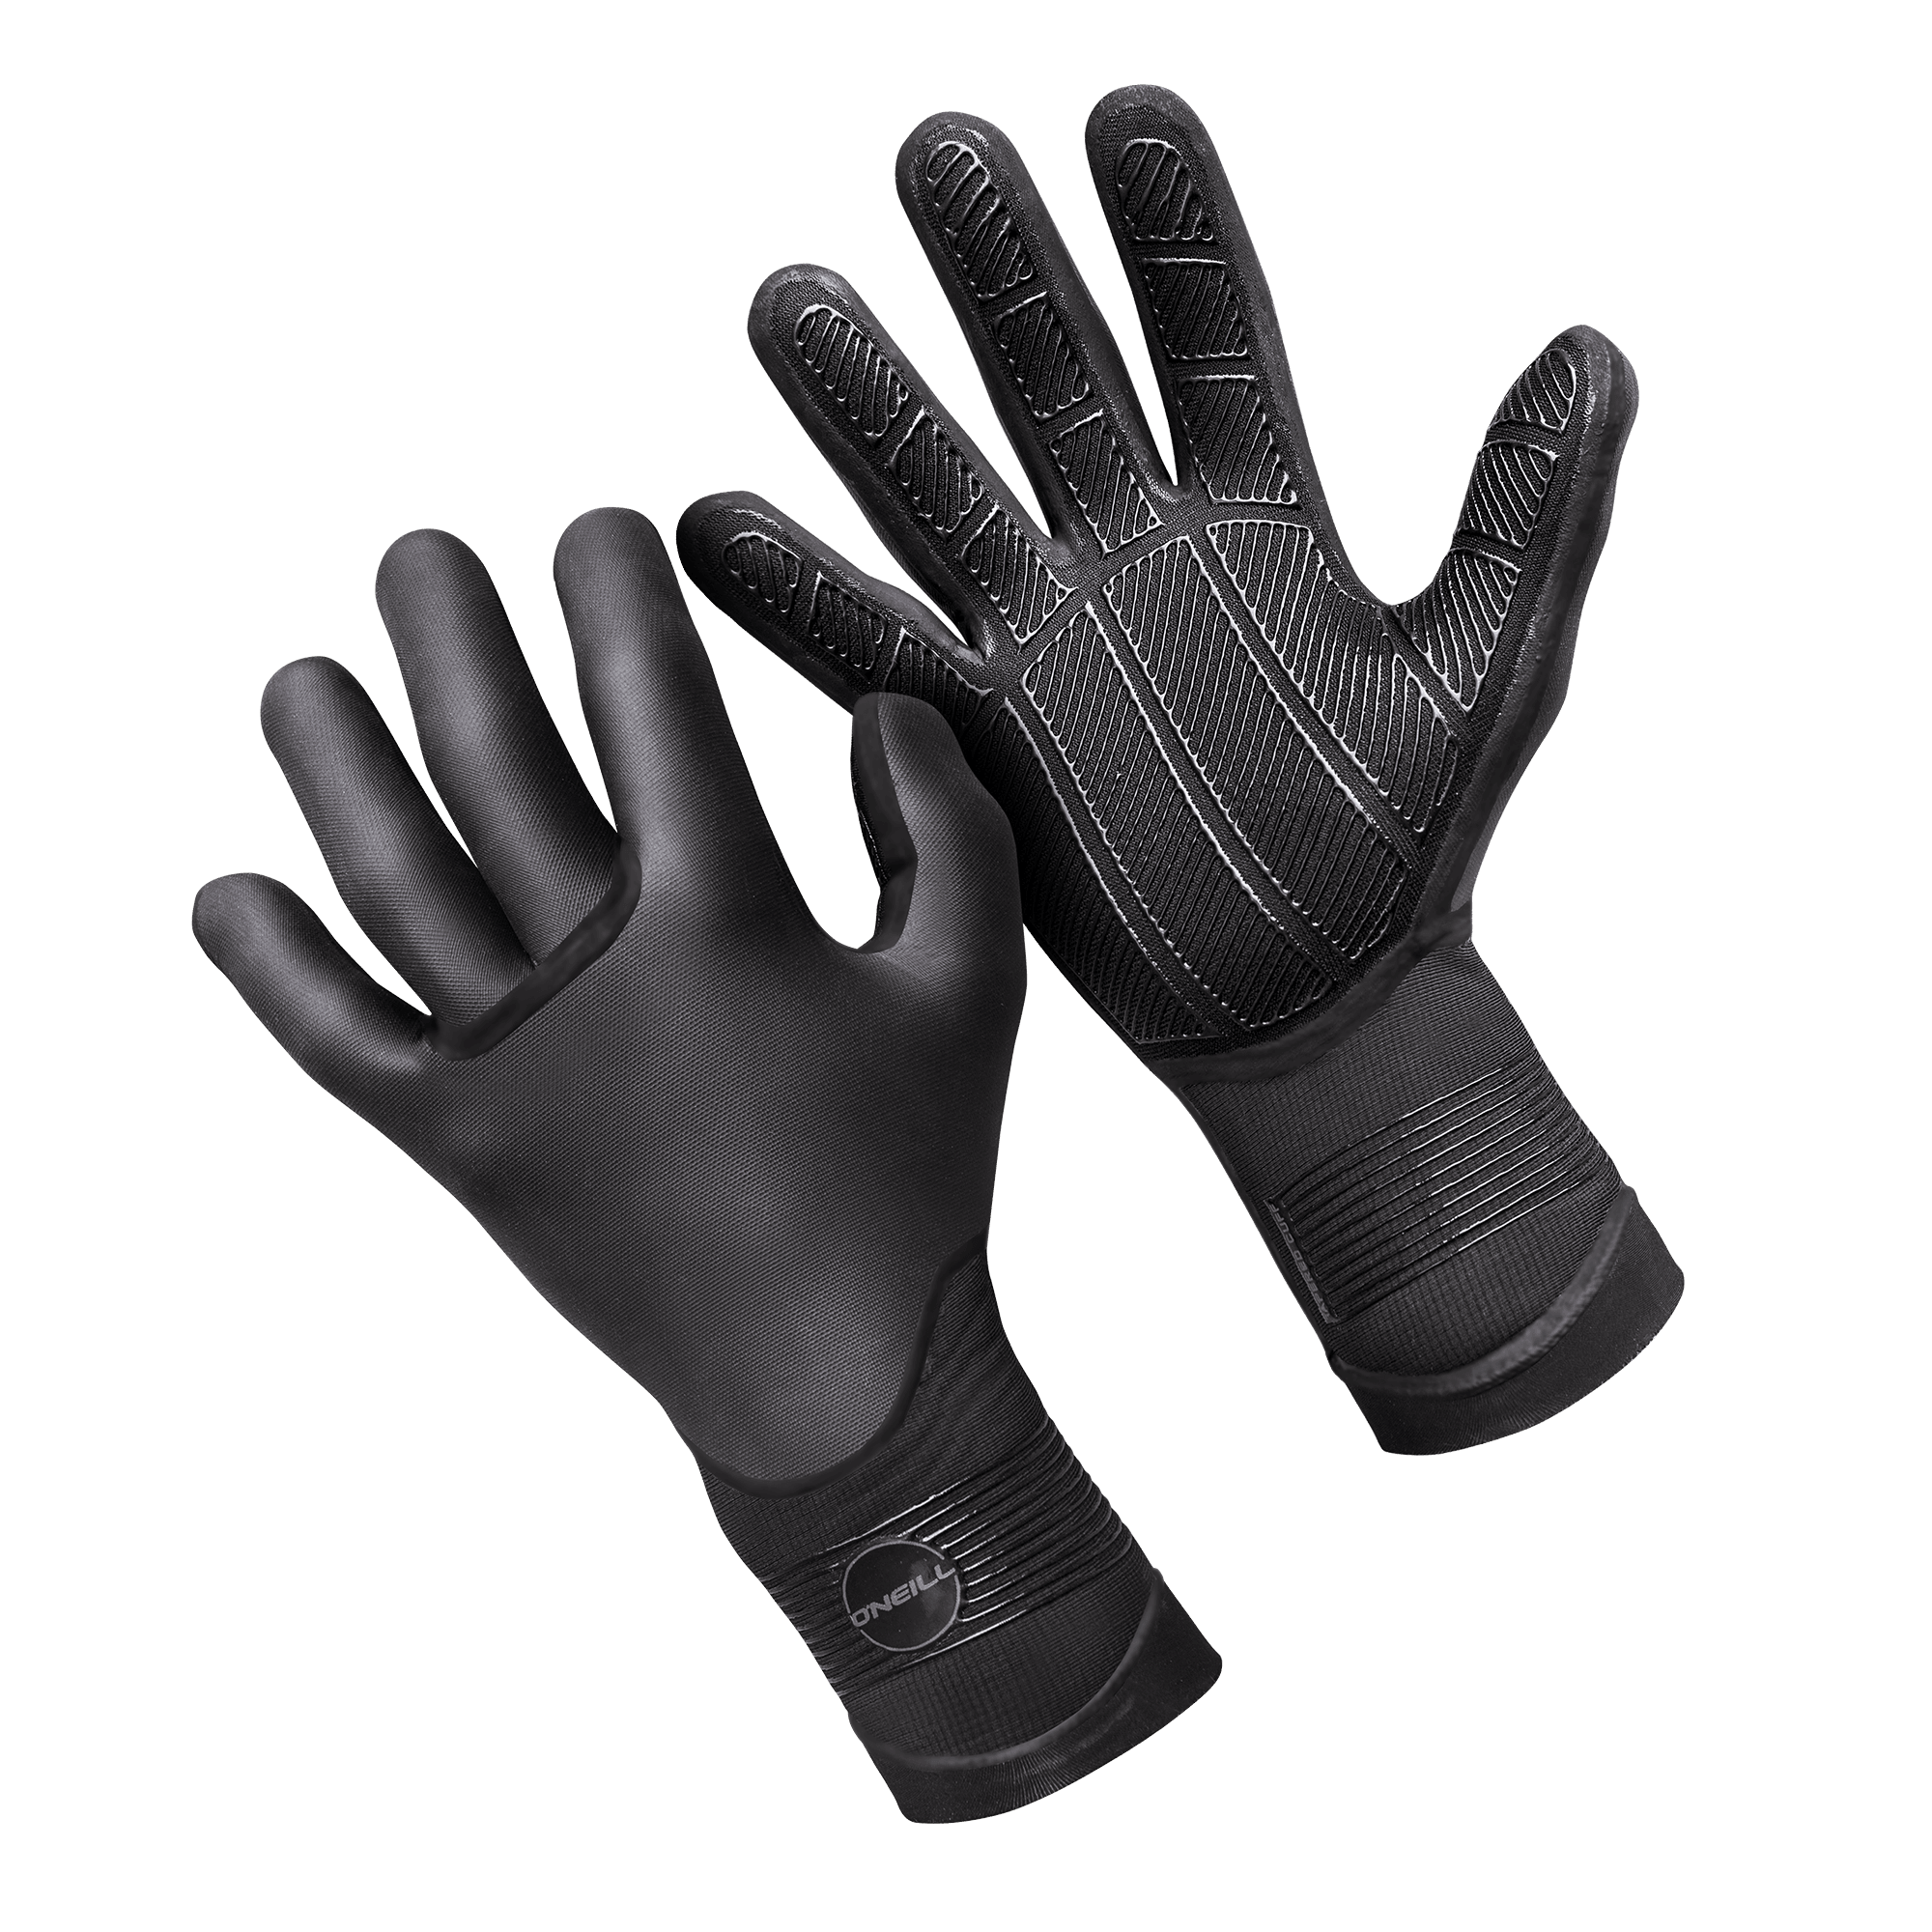 O'Neill Psycho Tech 3mm Gloves